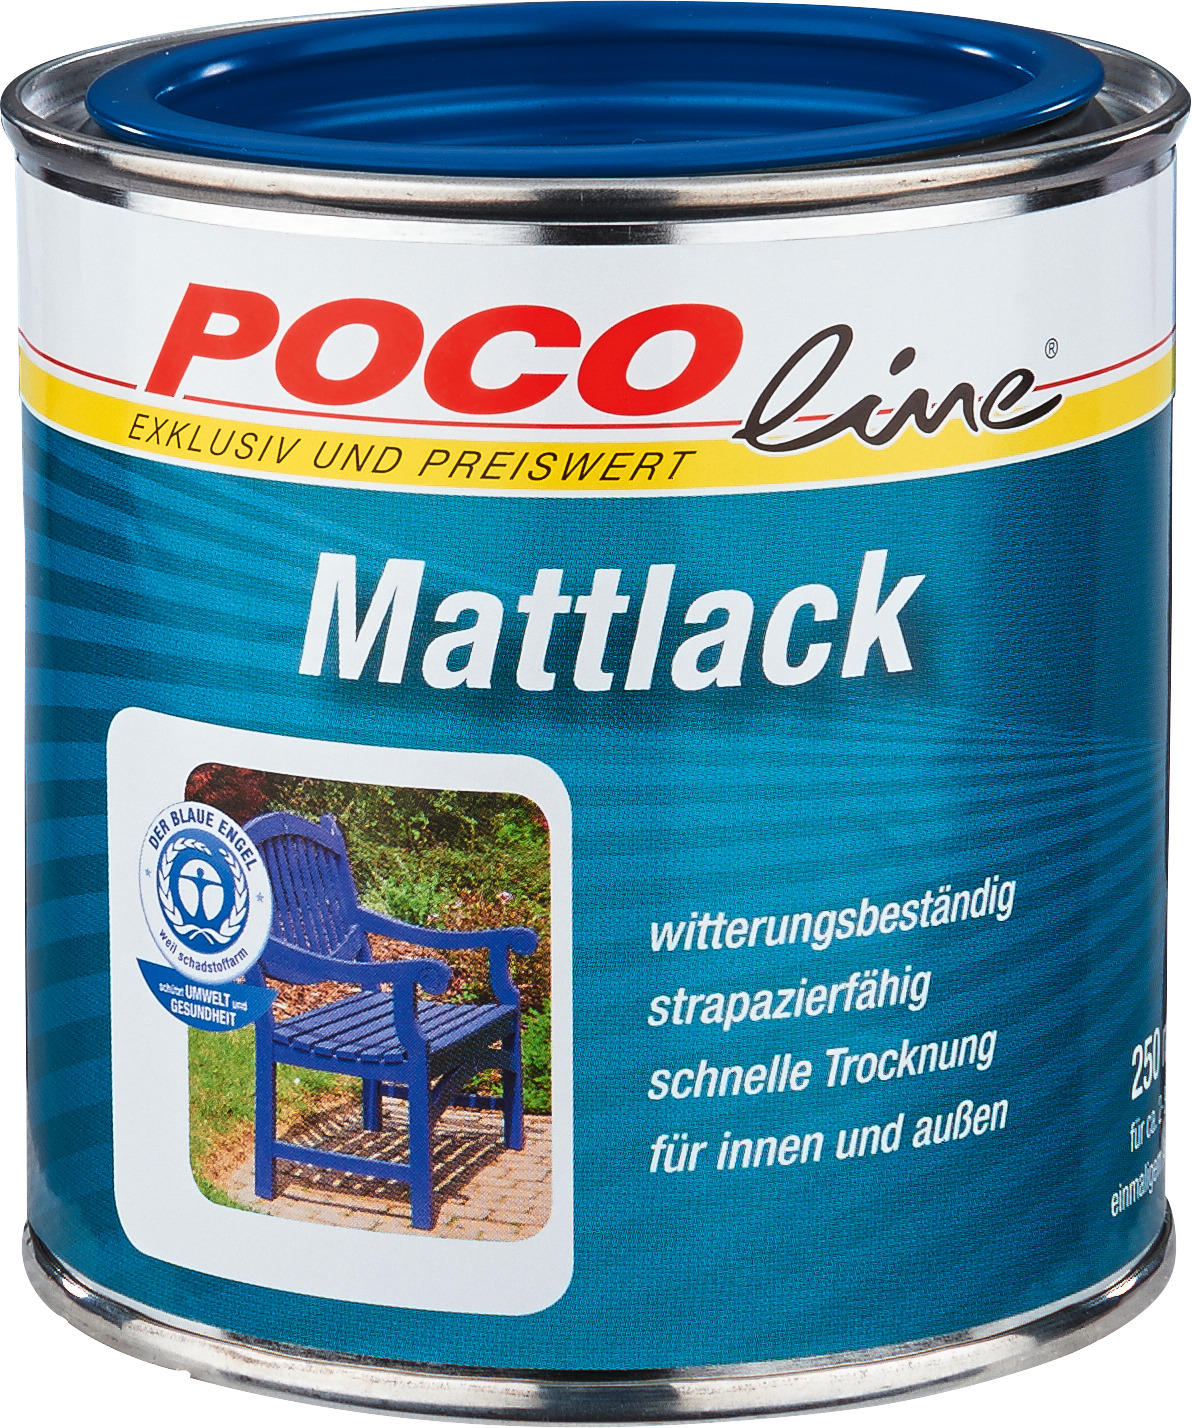 POCOline Acyl Buntlack enzianblau matt ca. 0,25 l Mattlack_Acryl_2in1 250ml - enzianblau (250ml)